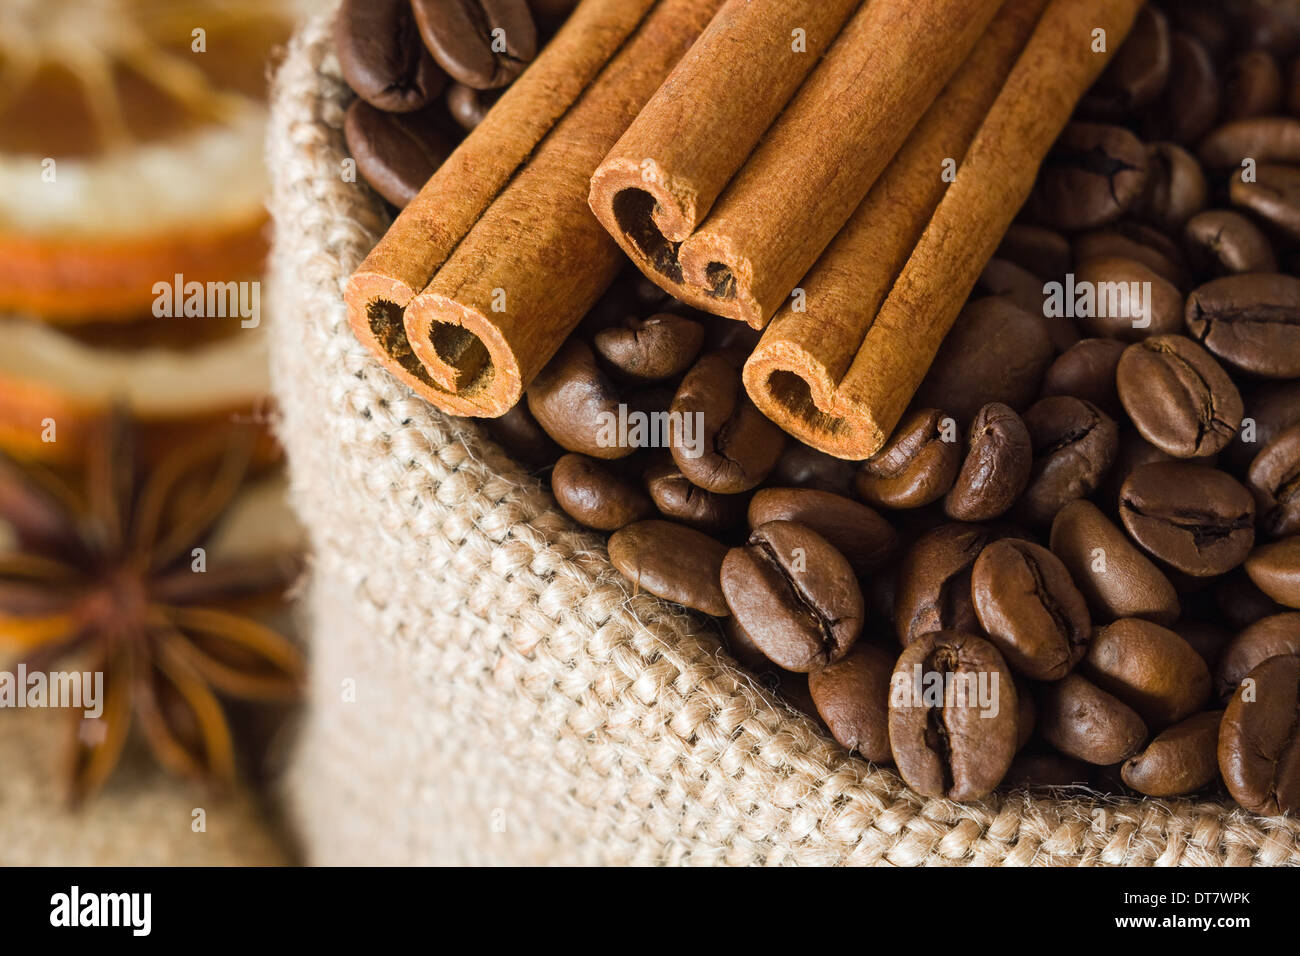 Les grains de café aromatique et la cannelle en sac de toile Banque D'Images